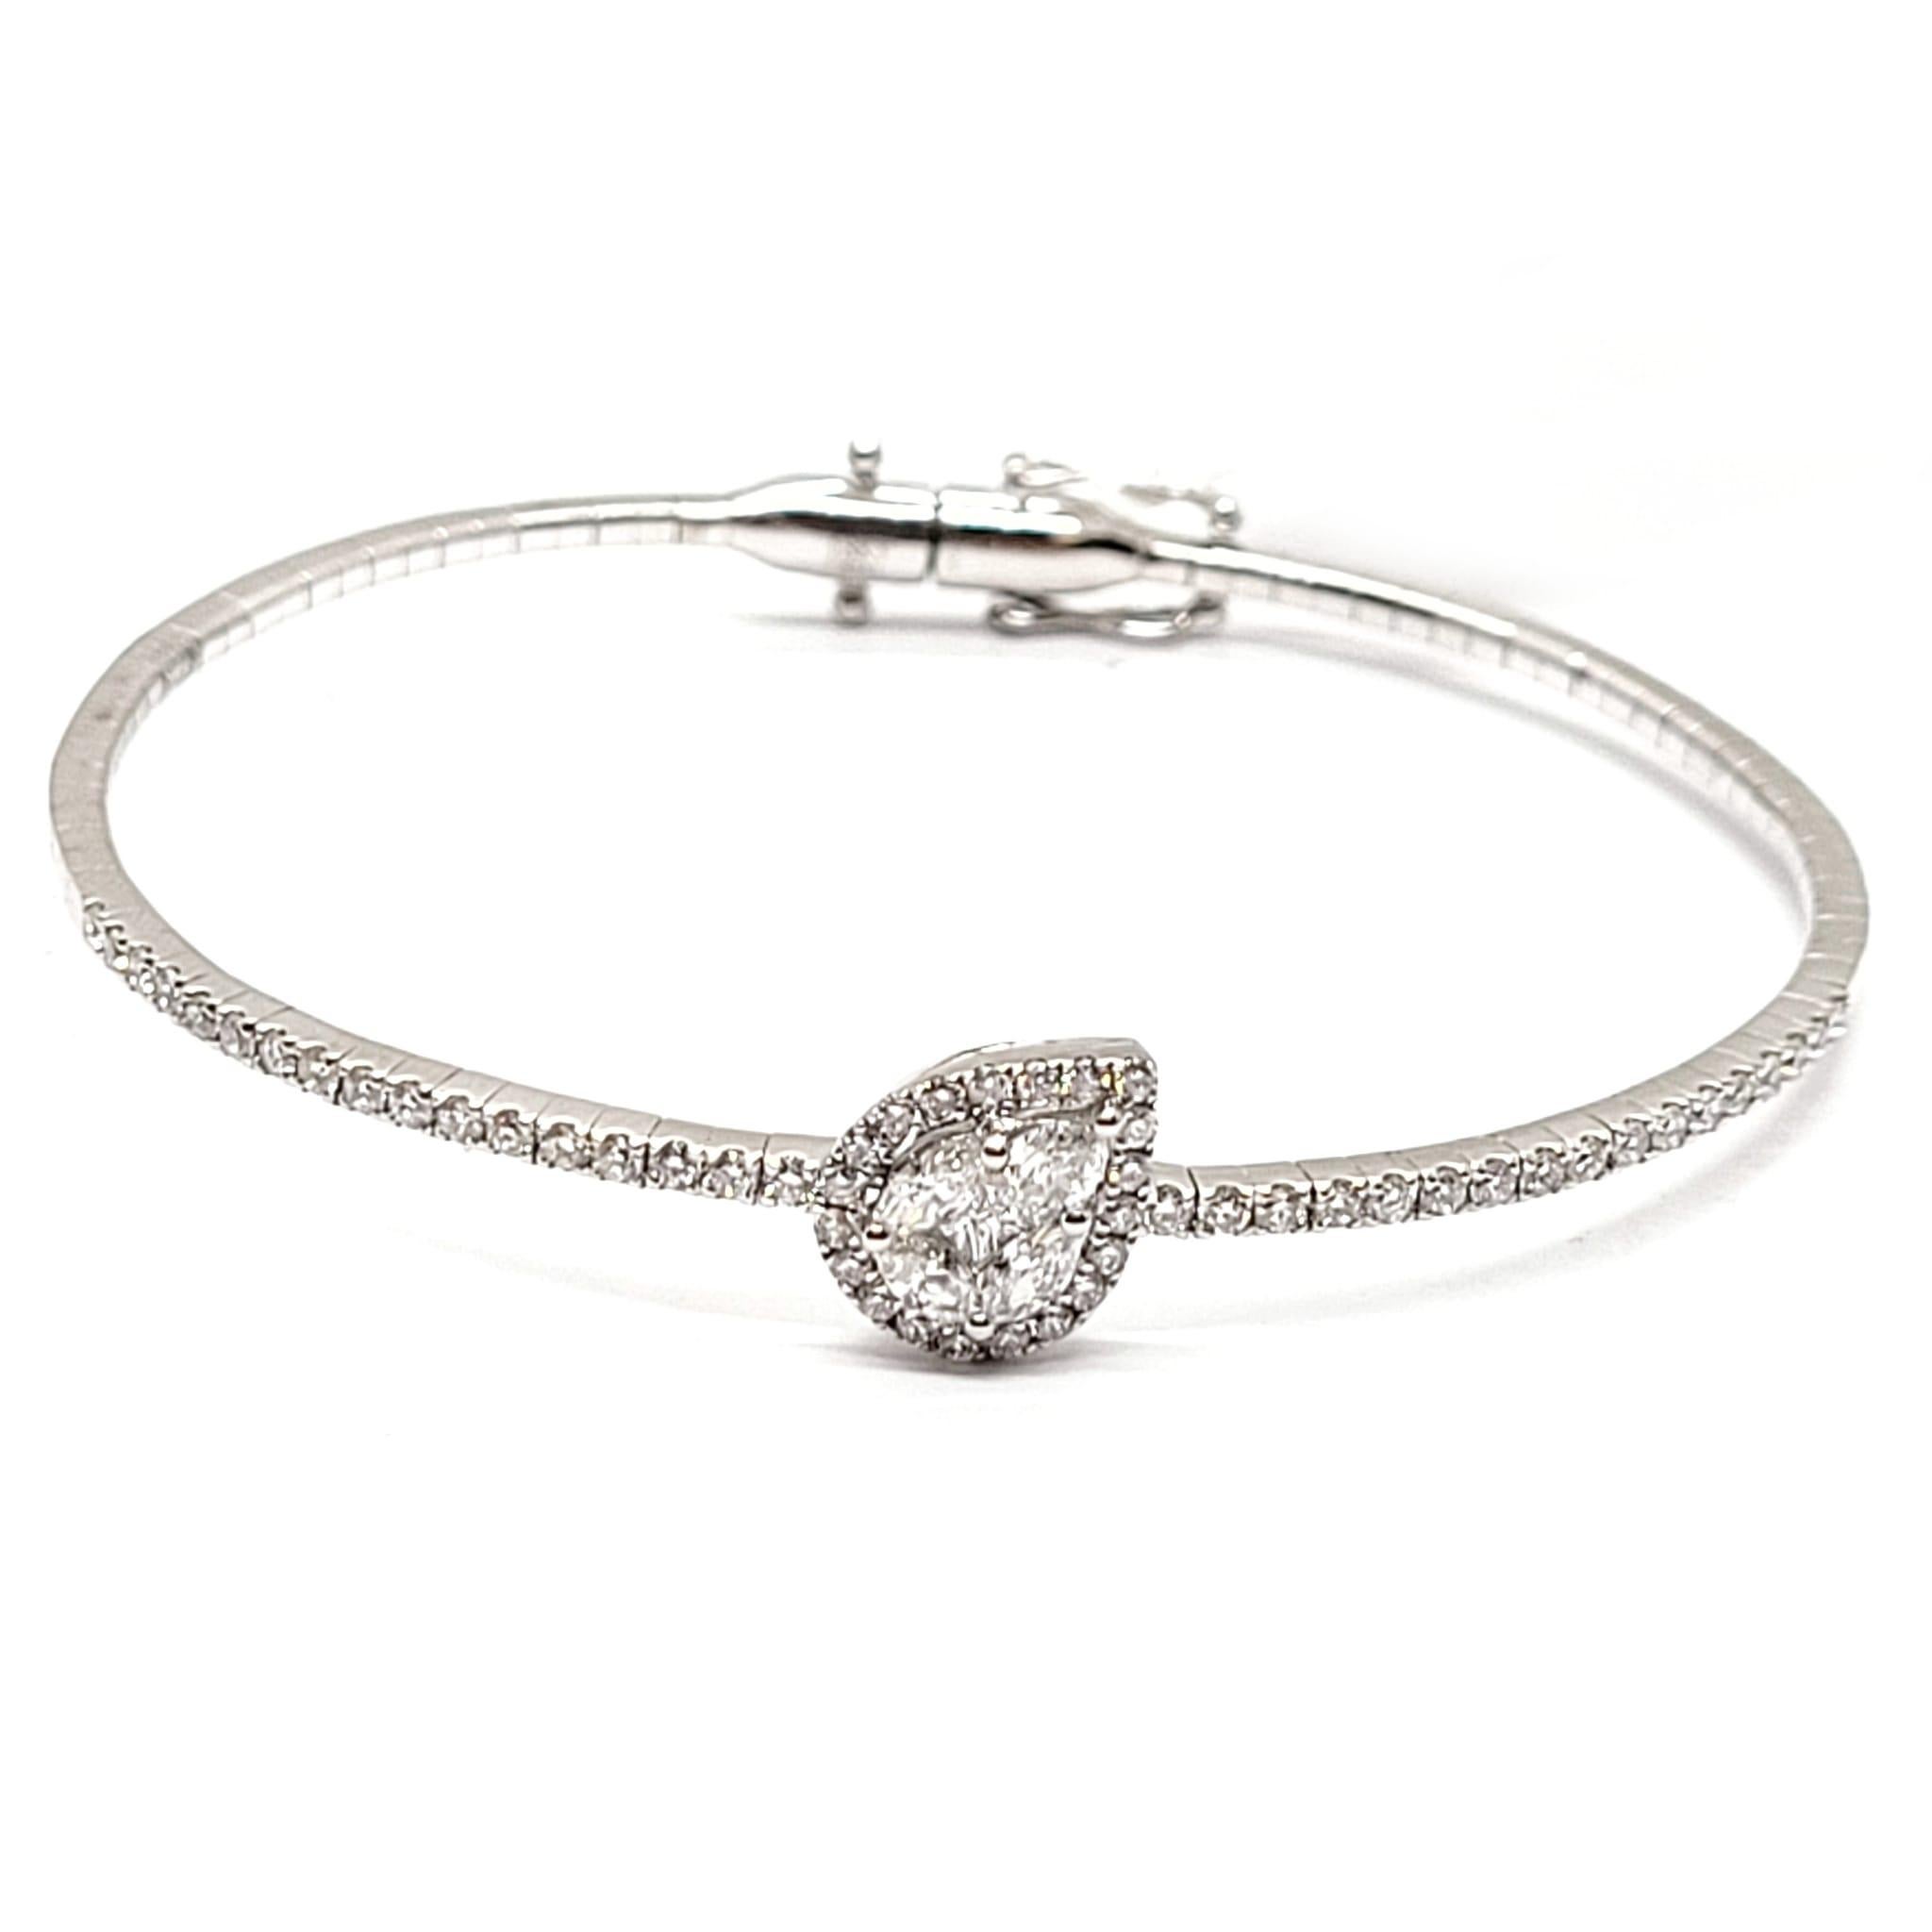 Andreoli - Bracelet en or 18 carats à diamants invisibles en forme de poire

Ce bracelet comporte :
- diamant de 1,10 carat
- 8,54 g d'or blanc 18kt
- Fabriqué en Italie